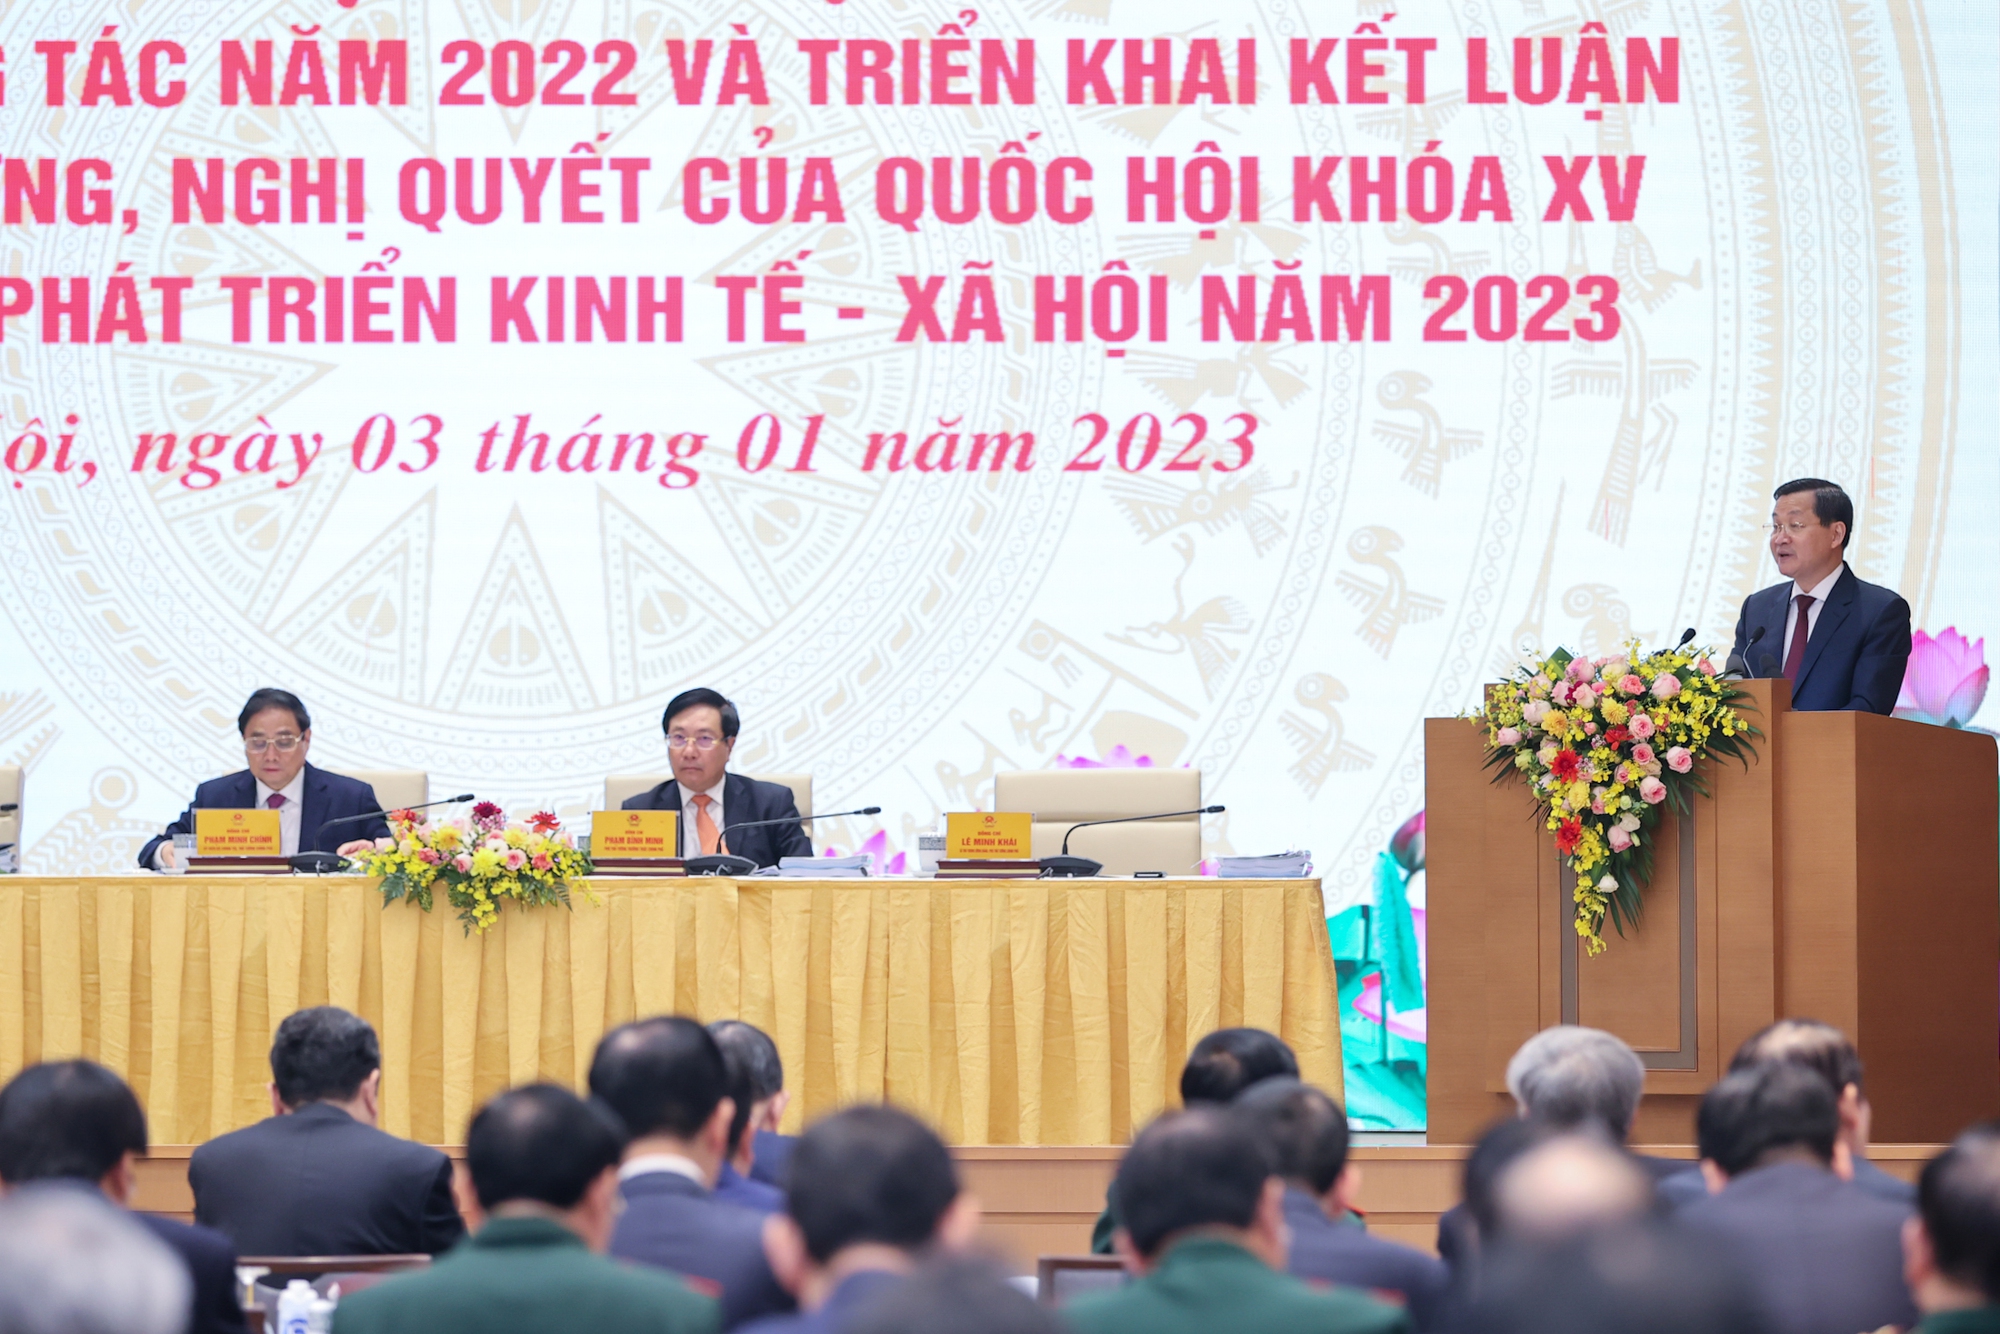 Phó Thủ tướng Lê Minh Khái trình bày tóm tắt một số nội dung chính của dự thảo Nghị quyết của Chính phủ về nhiệm vụ, giải pháp chủ yếu thực hiện Kế hoạch phát triển KTXH và Dự toán ngân sách nhà nước và cải thiện môi trường kinh doanh, nâng cao năng lực cạnh tranh quốc gia năm 2023. Ảnh: VGP.